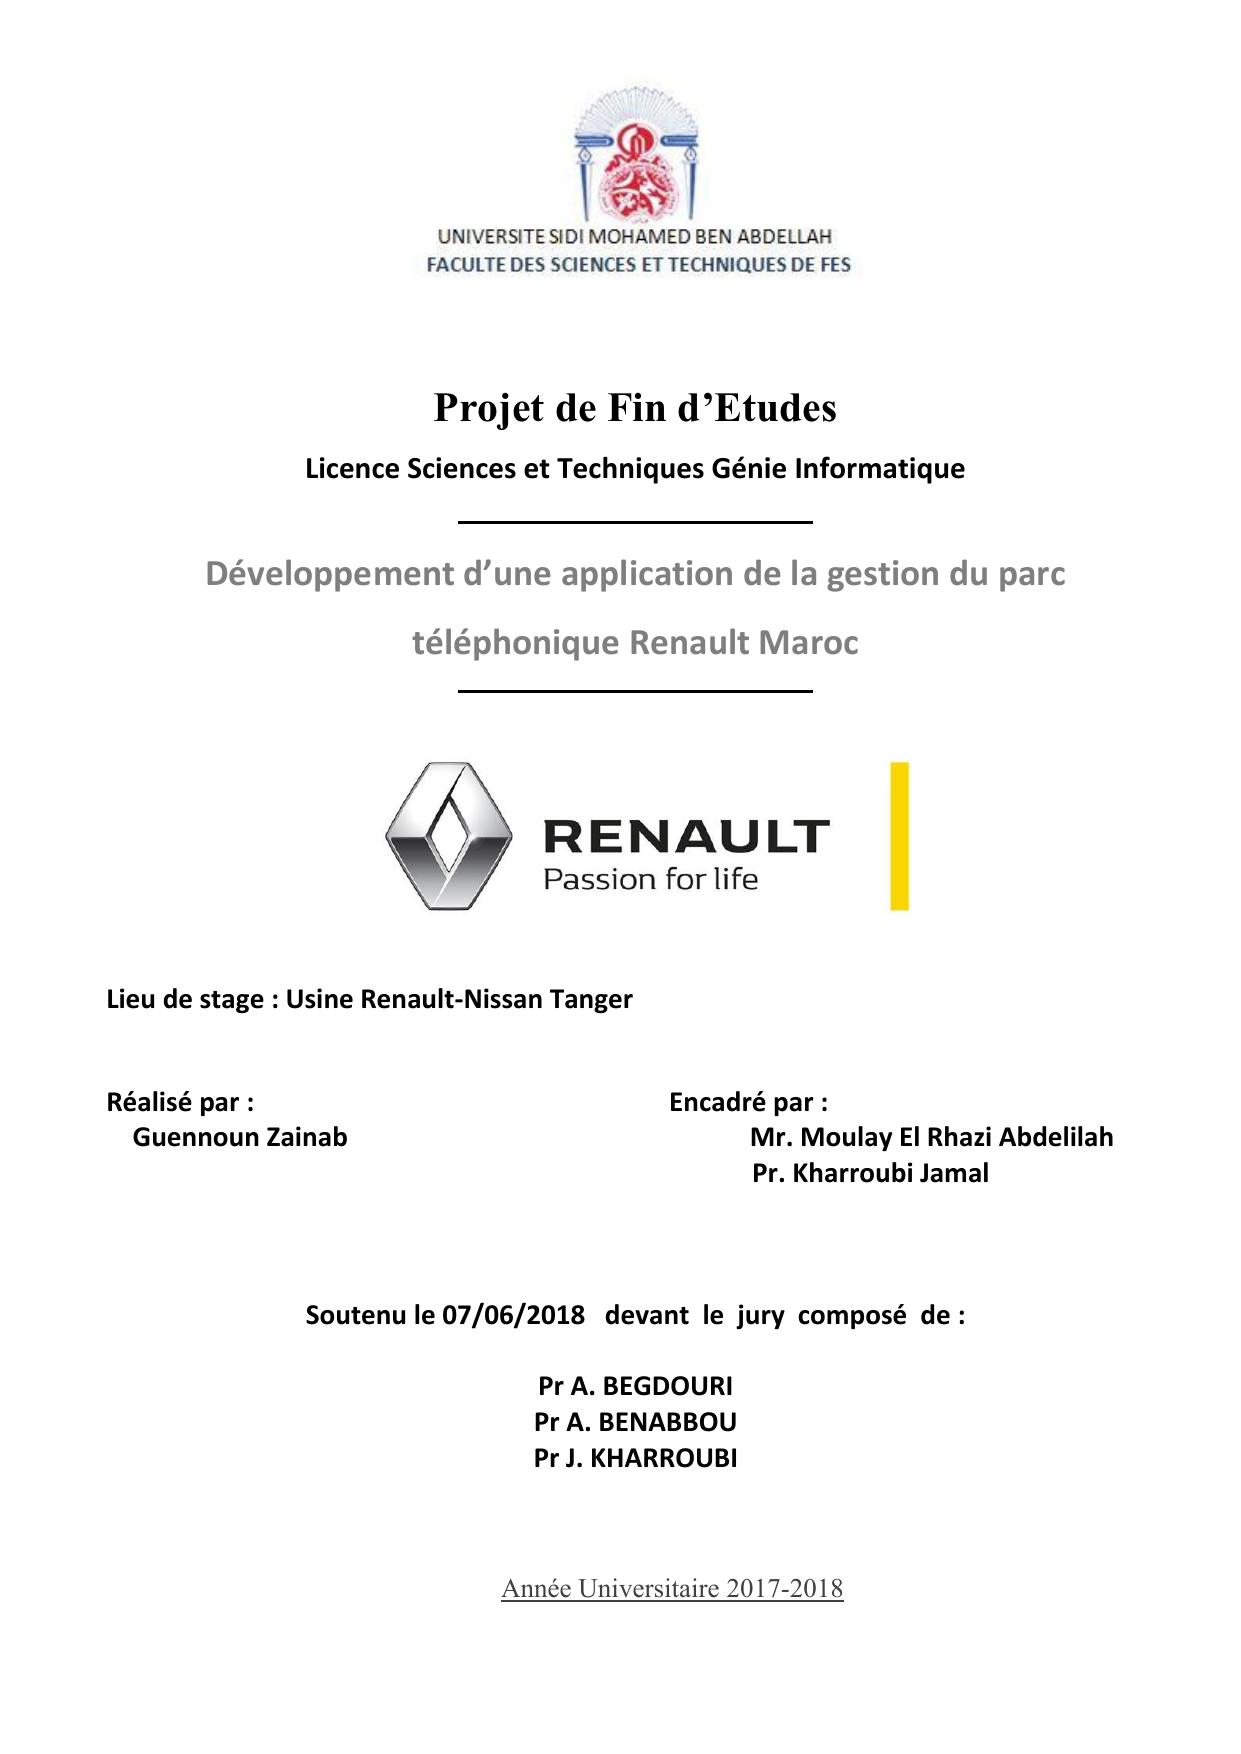 Développement d’une application de la gestion du parc téléphonique Renault Maroc